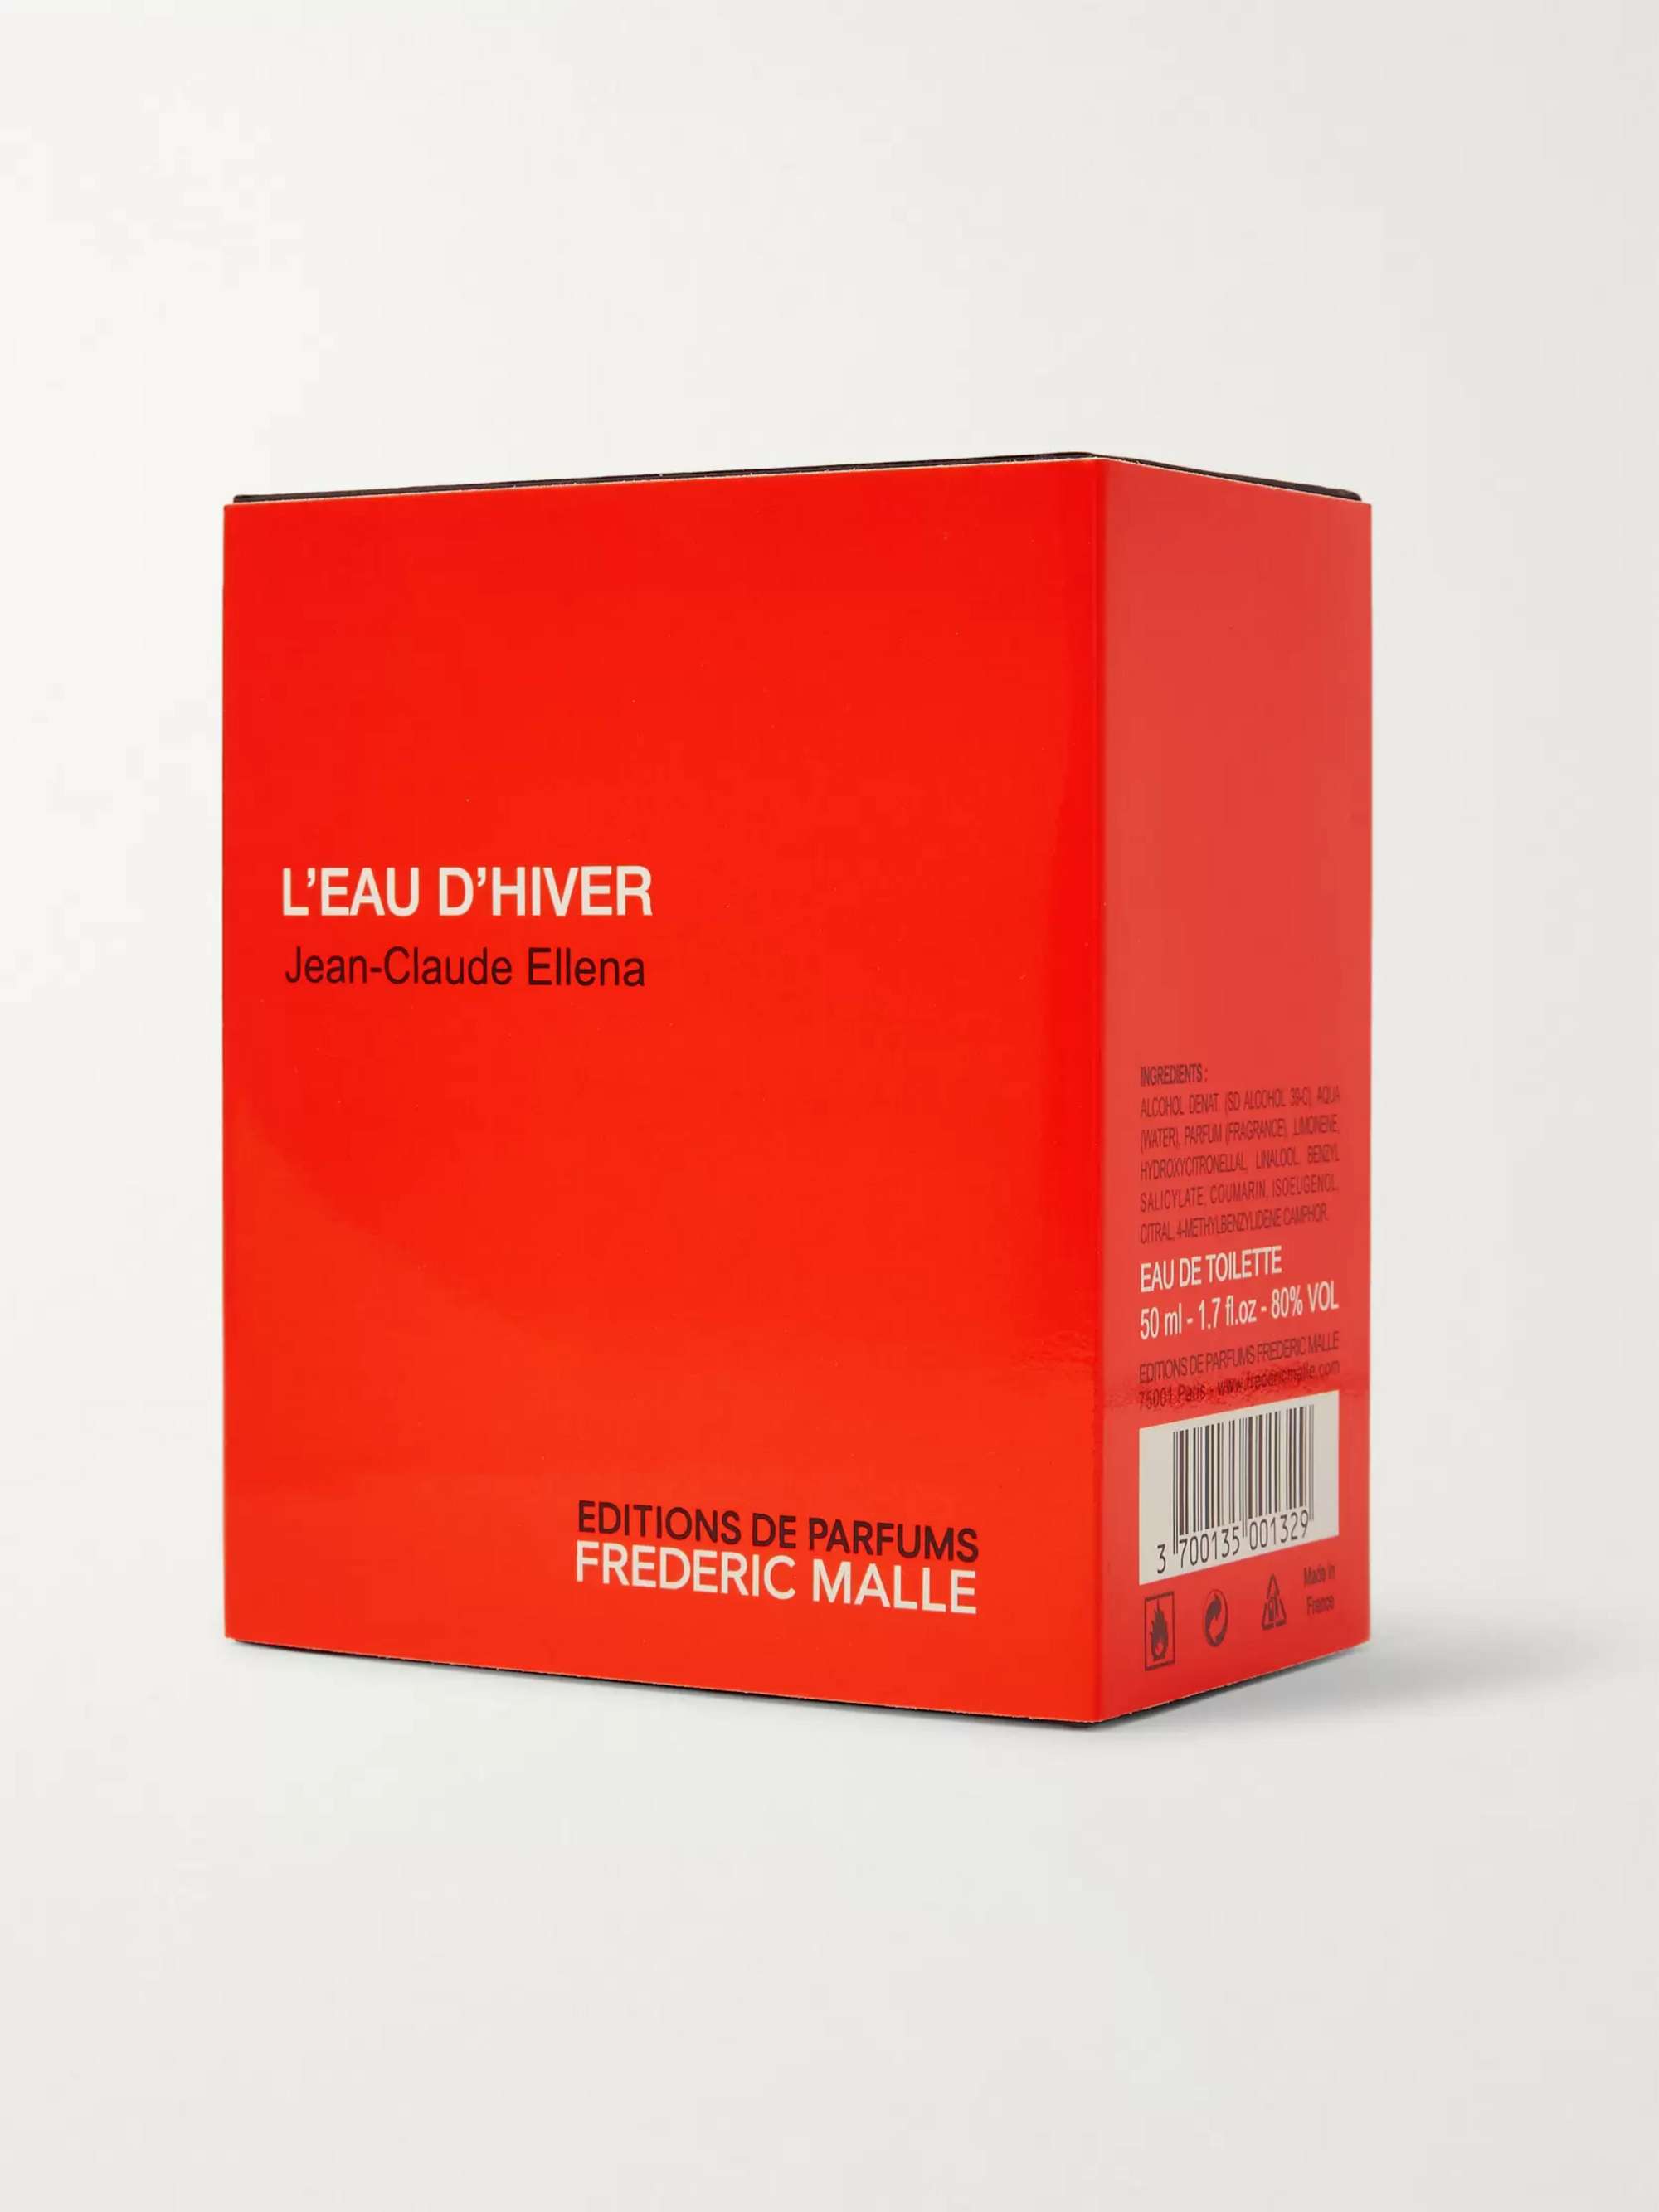 Frederic Malle L'Eau d'Hiver Eau de Toilette - White Heliotrope & Iris, 50ml